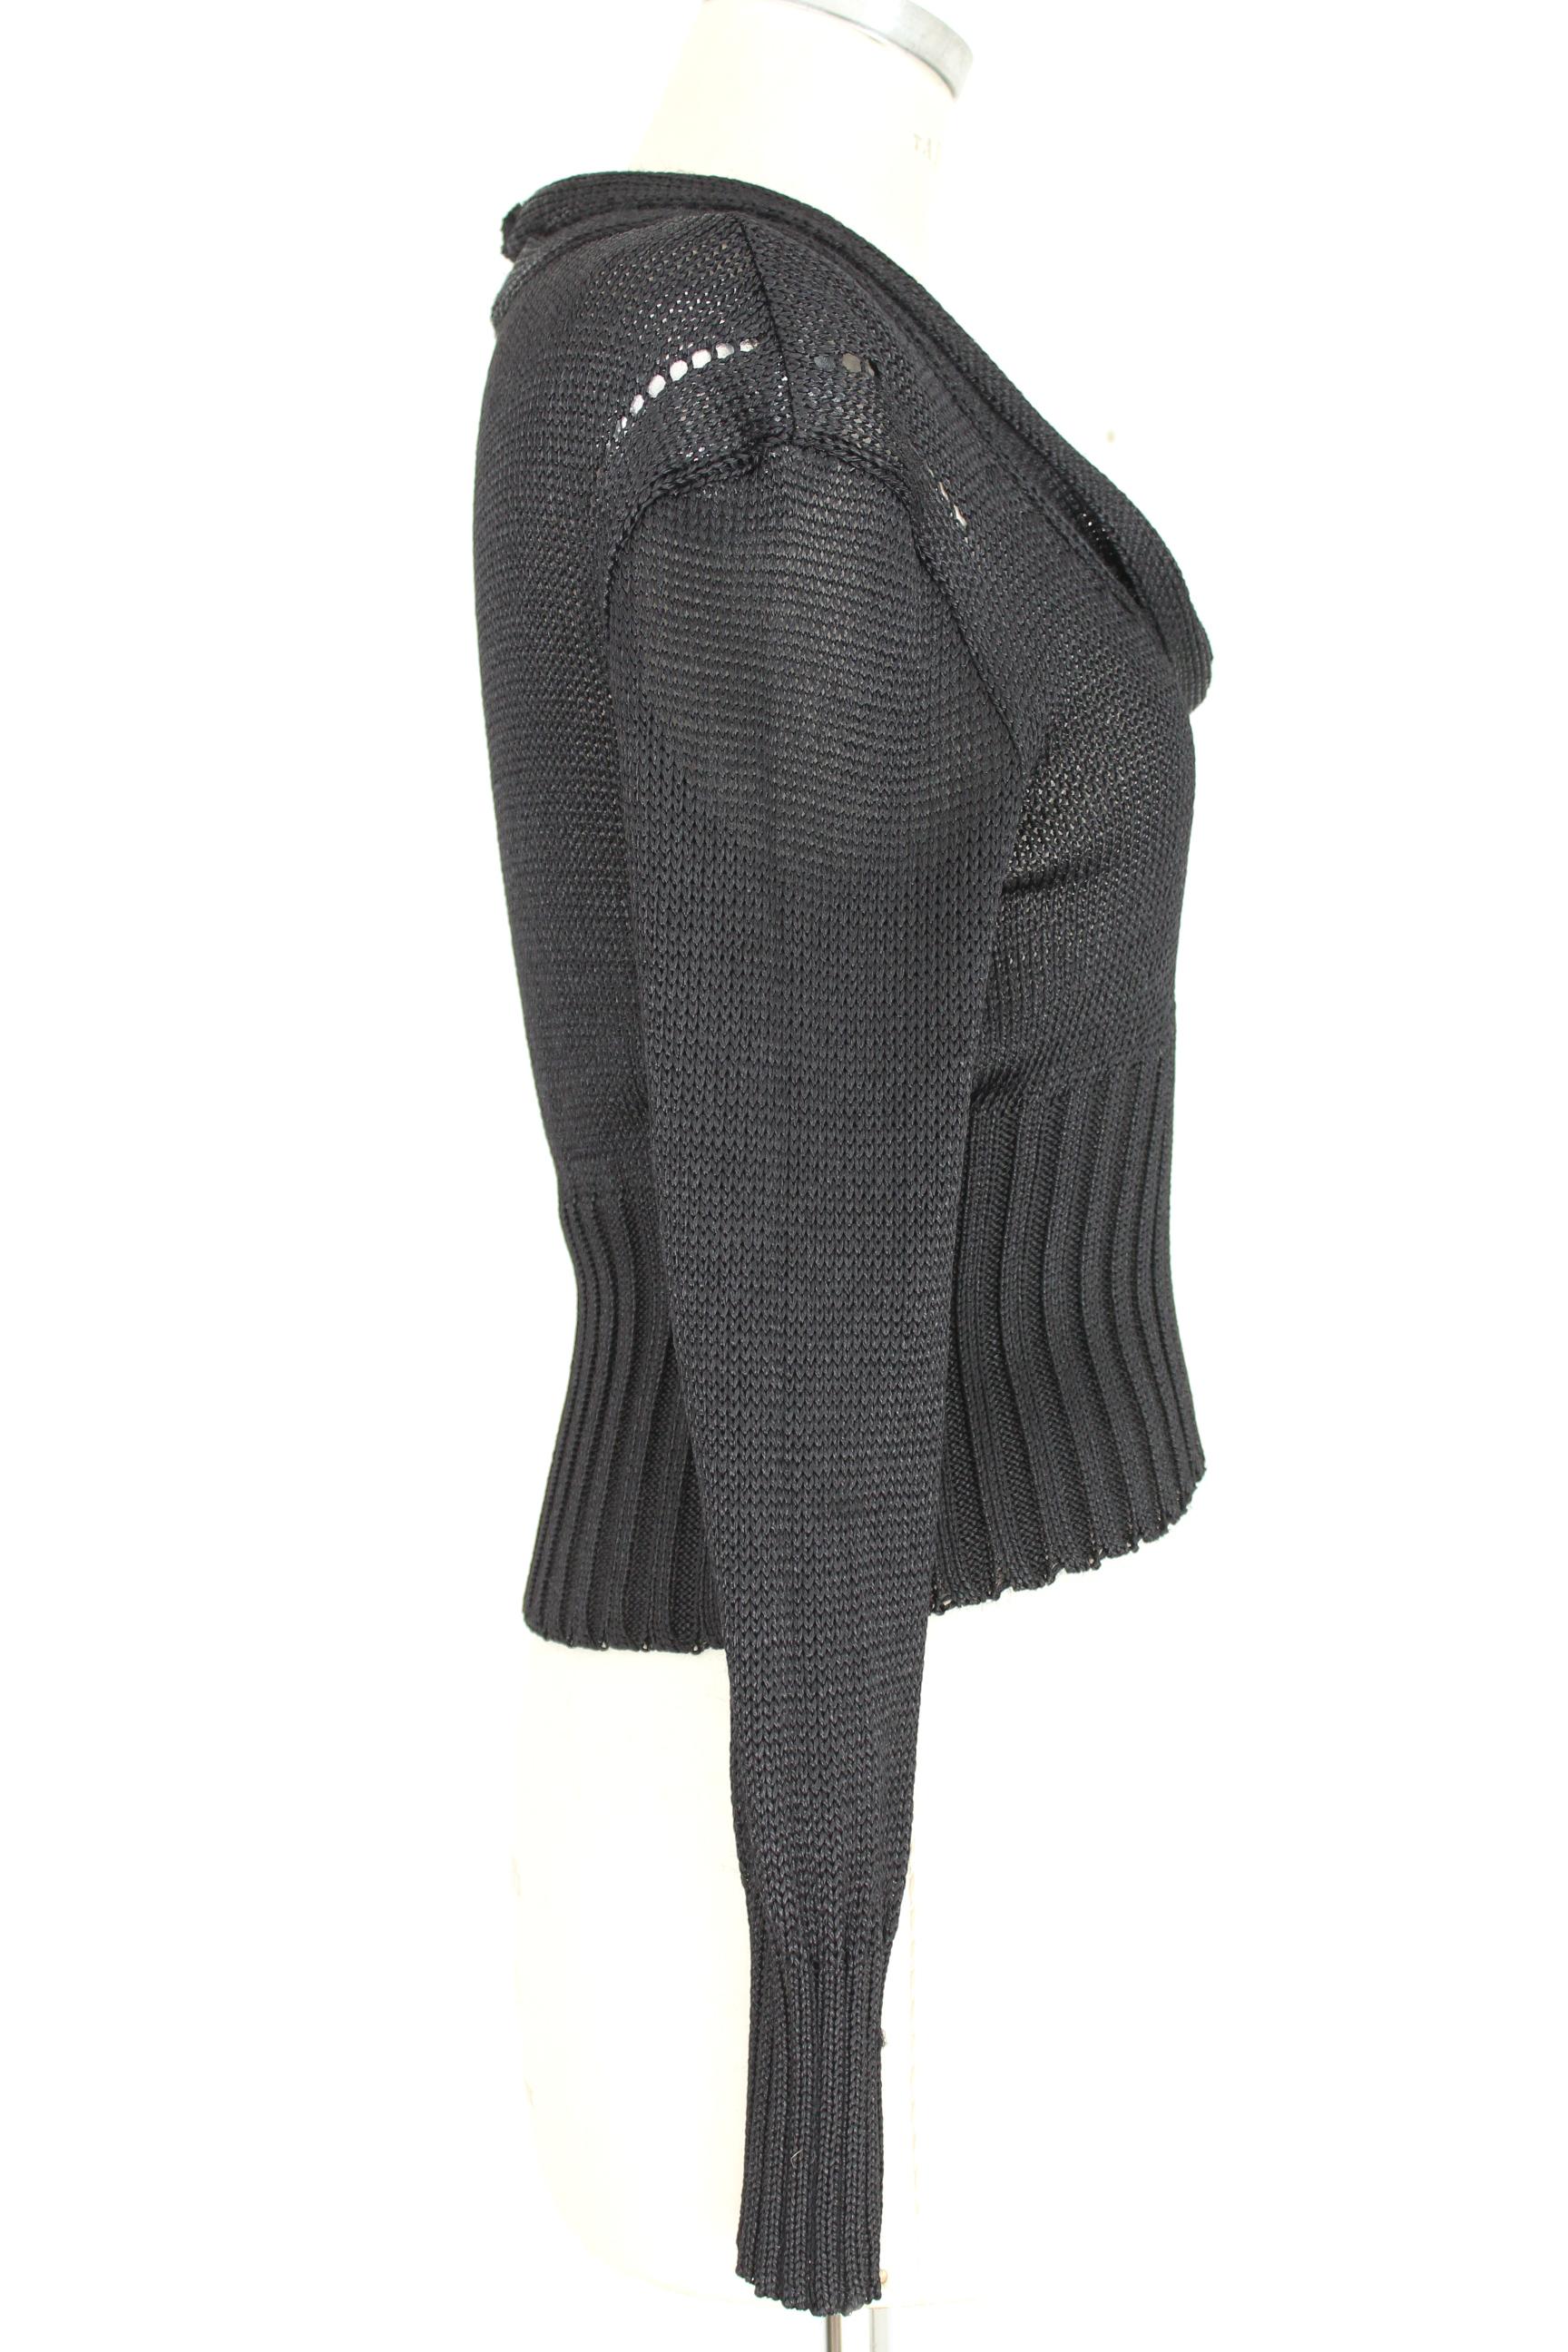 Ann Demeulemeester Black Cotton Short Openwork Sweater In Excellent Condition In Brindisi, Bt